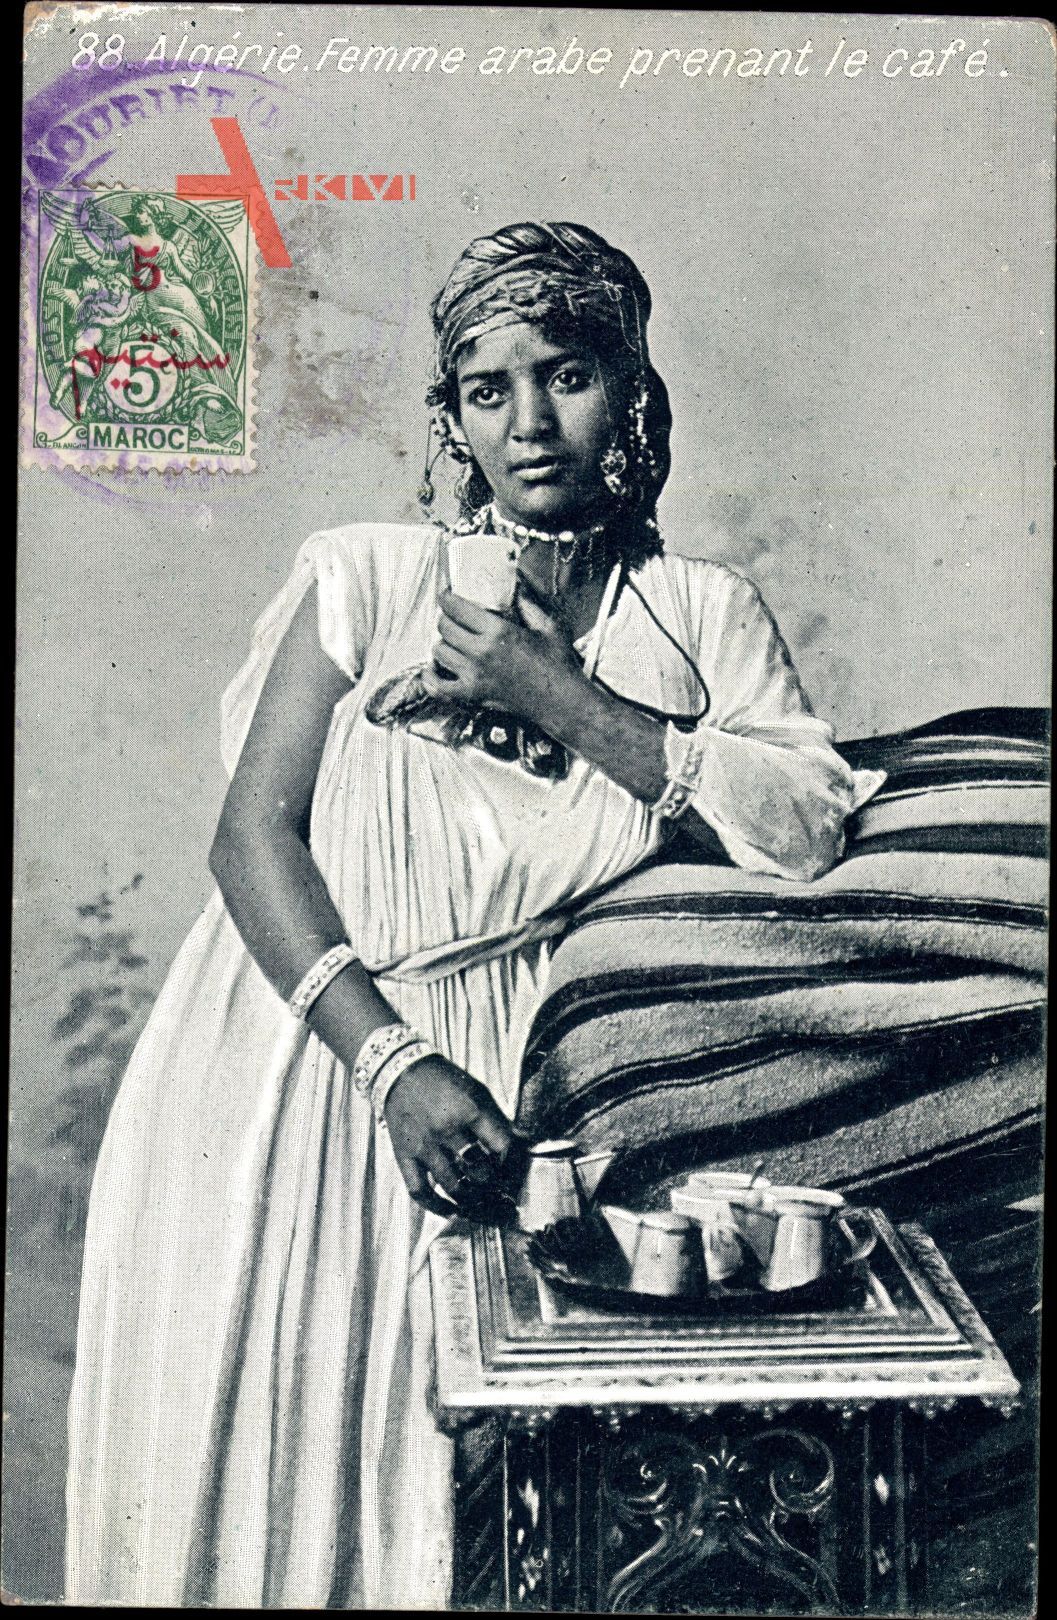 Algerien, Femme arabe prenant le cafe, Araberin, Schmuck